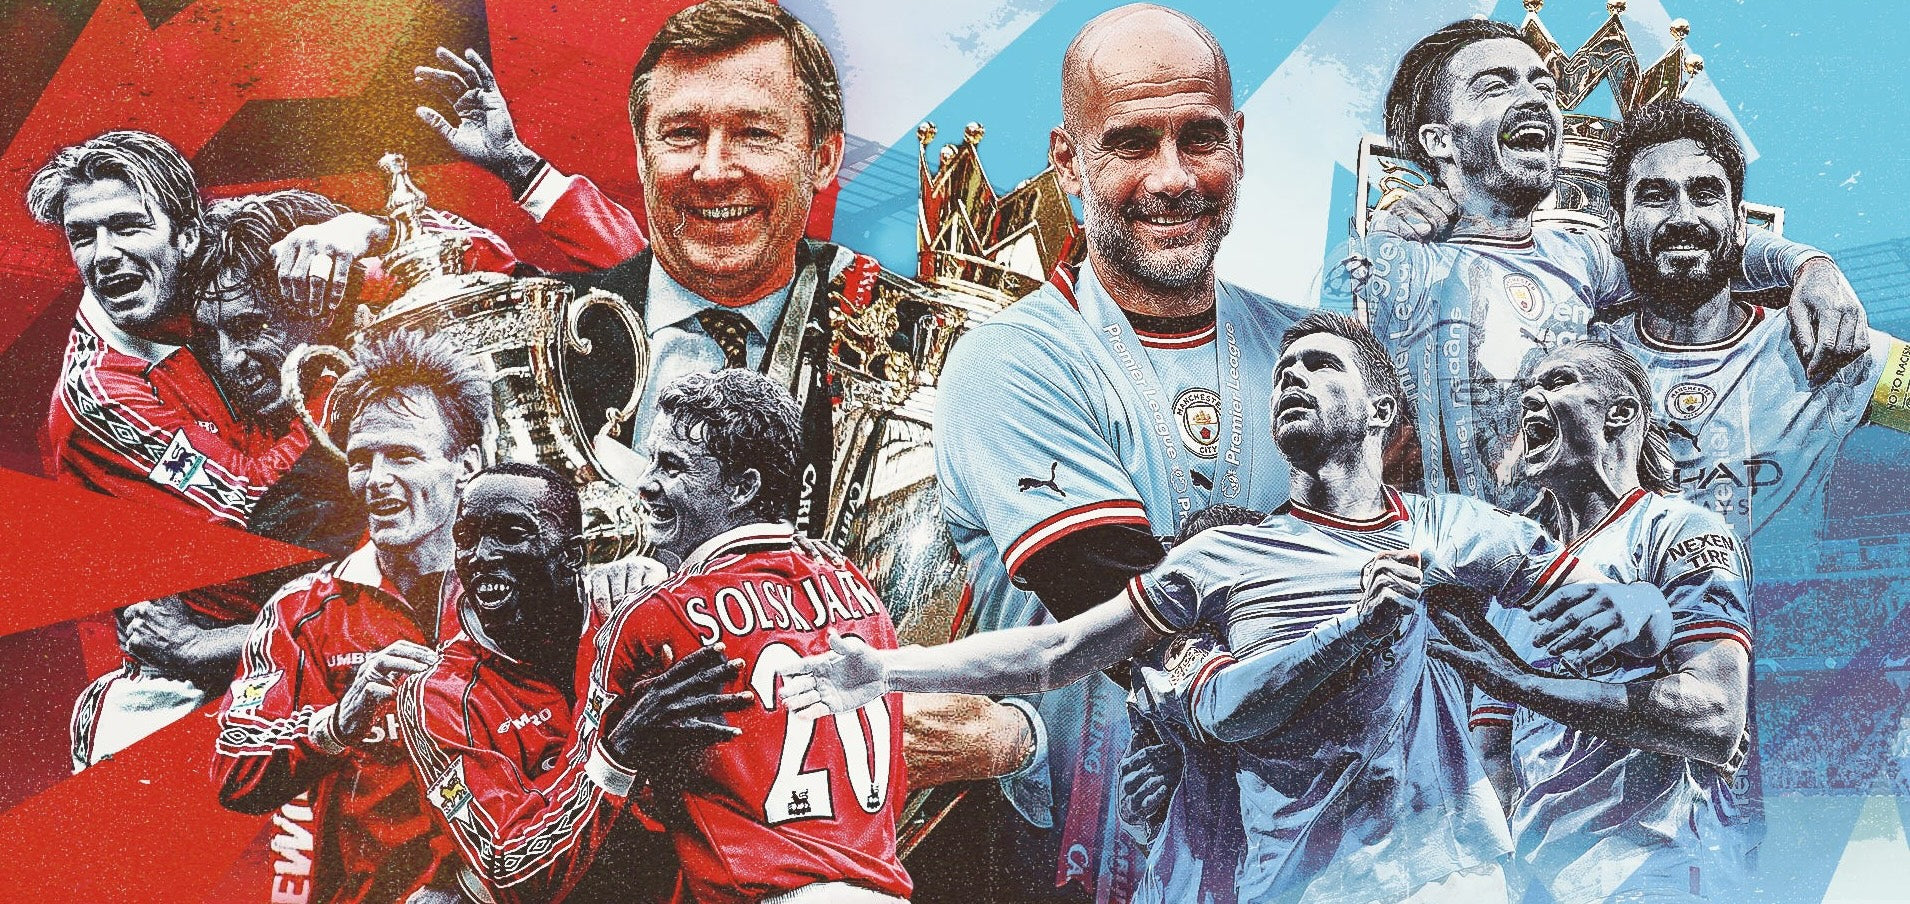 Il polso della passione: La rivalità di Manchester nel calcio